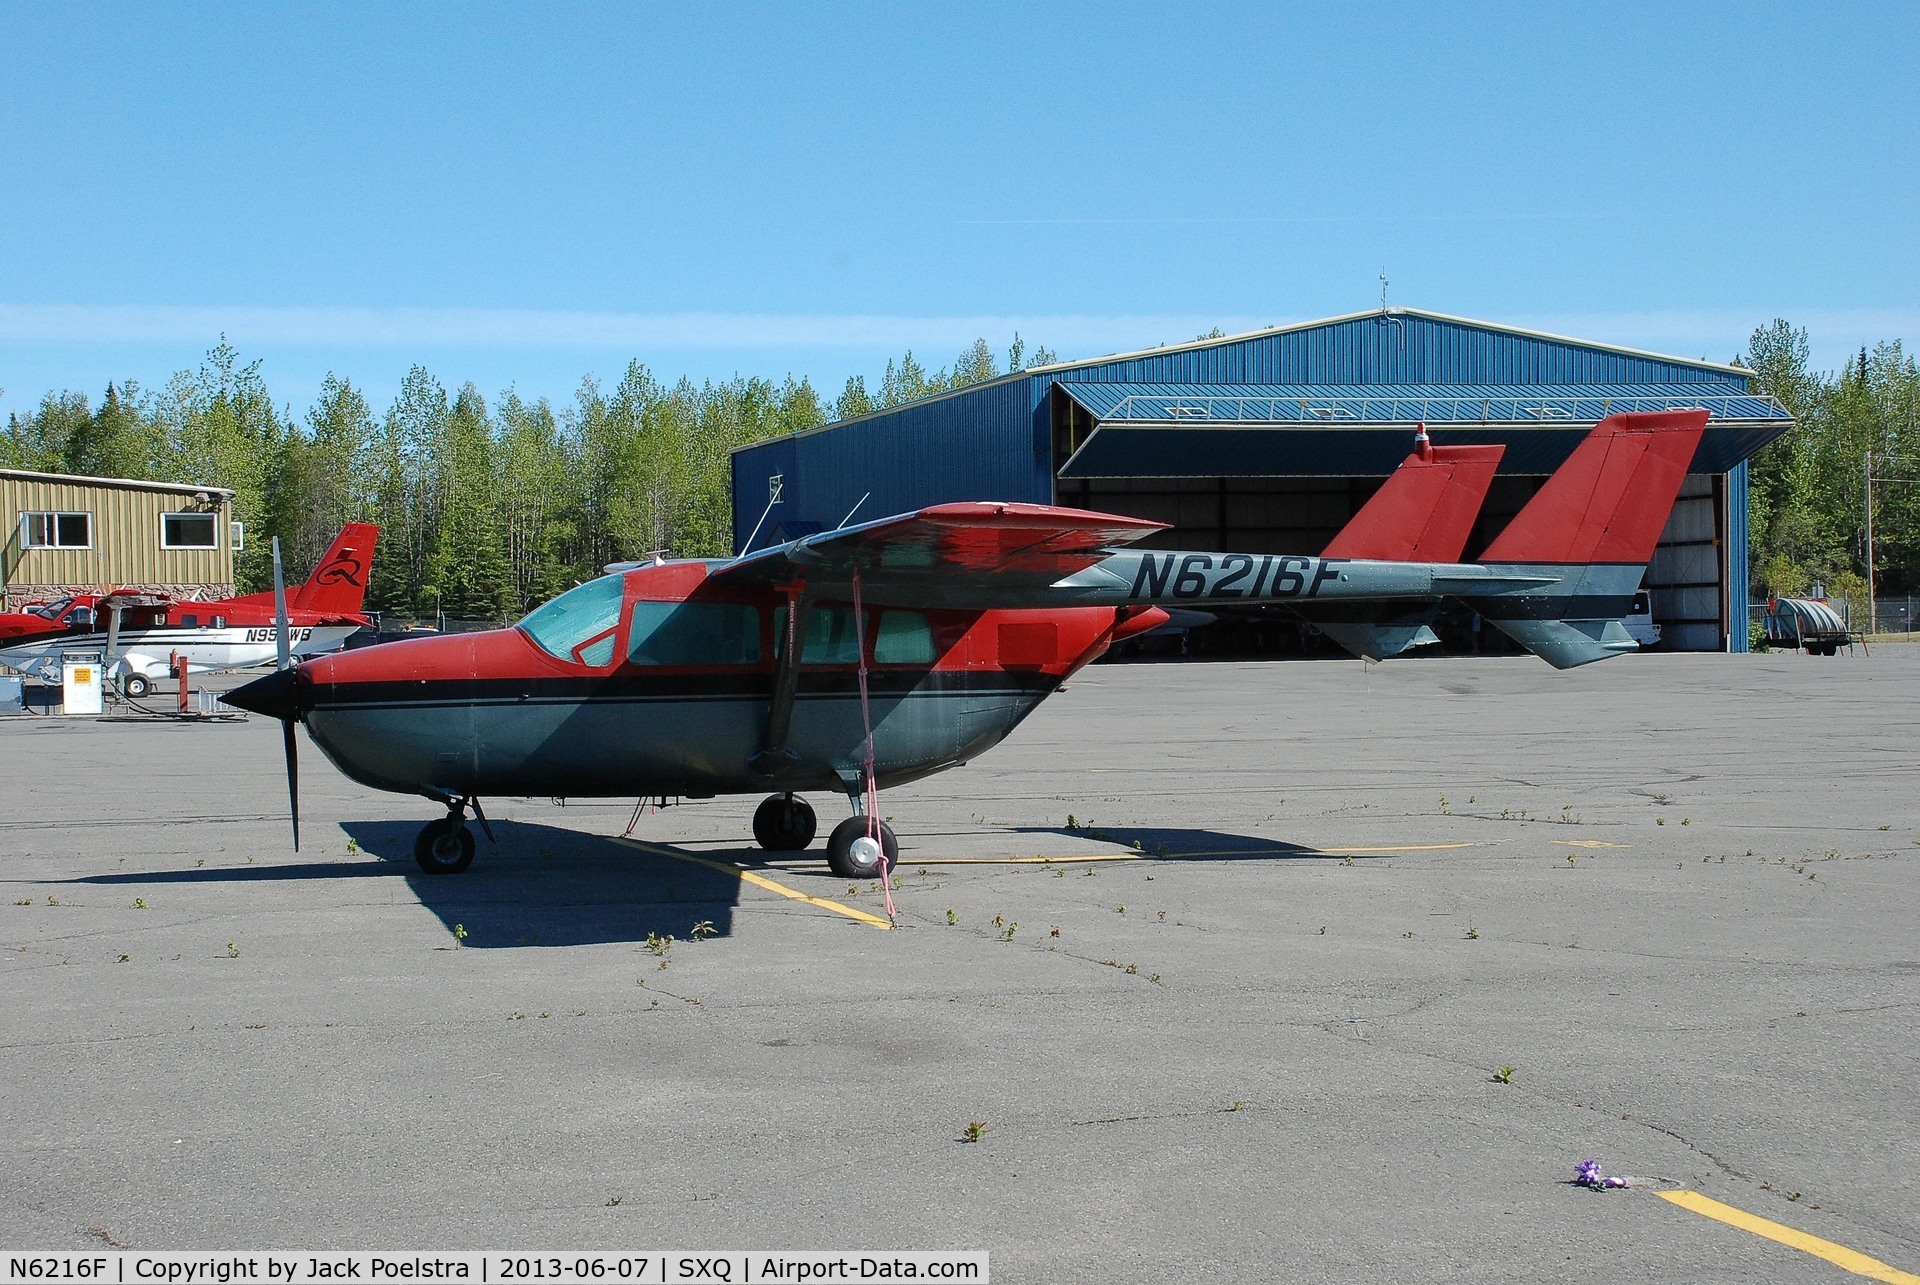 N6216F, 1965 Cessna 337 Super Skymaster C/N 337-0216, N6216F  at Soldotna airport AK